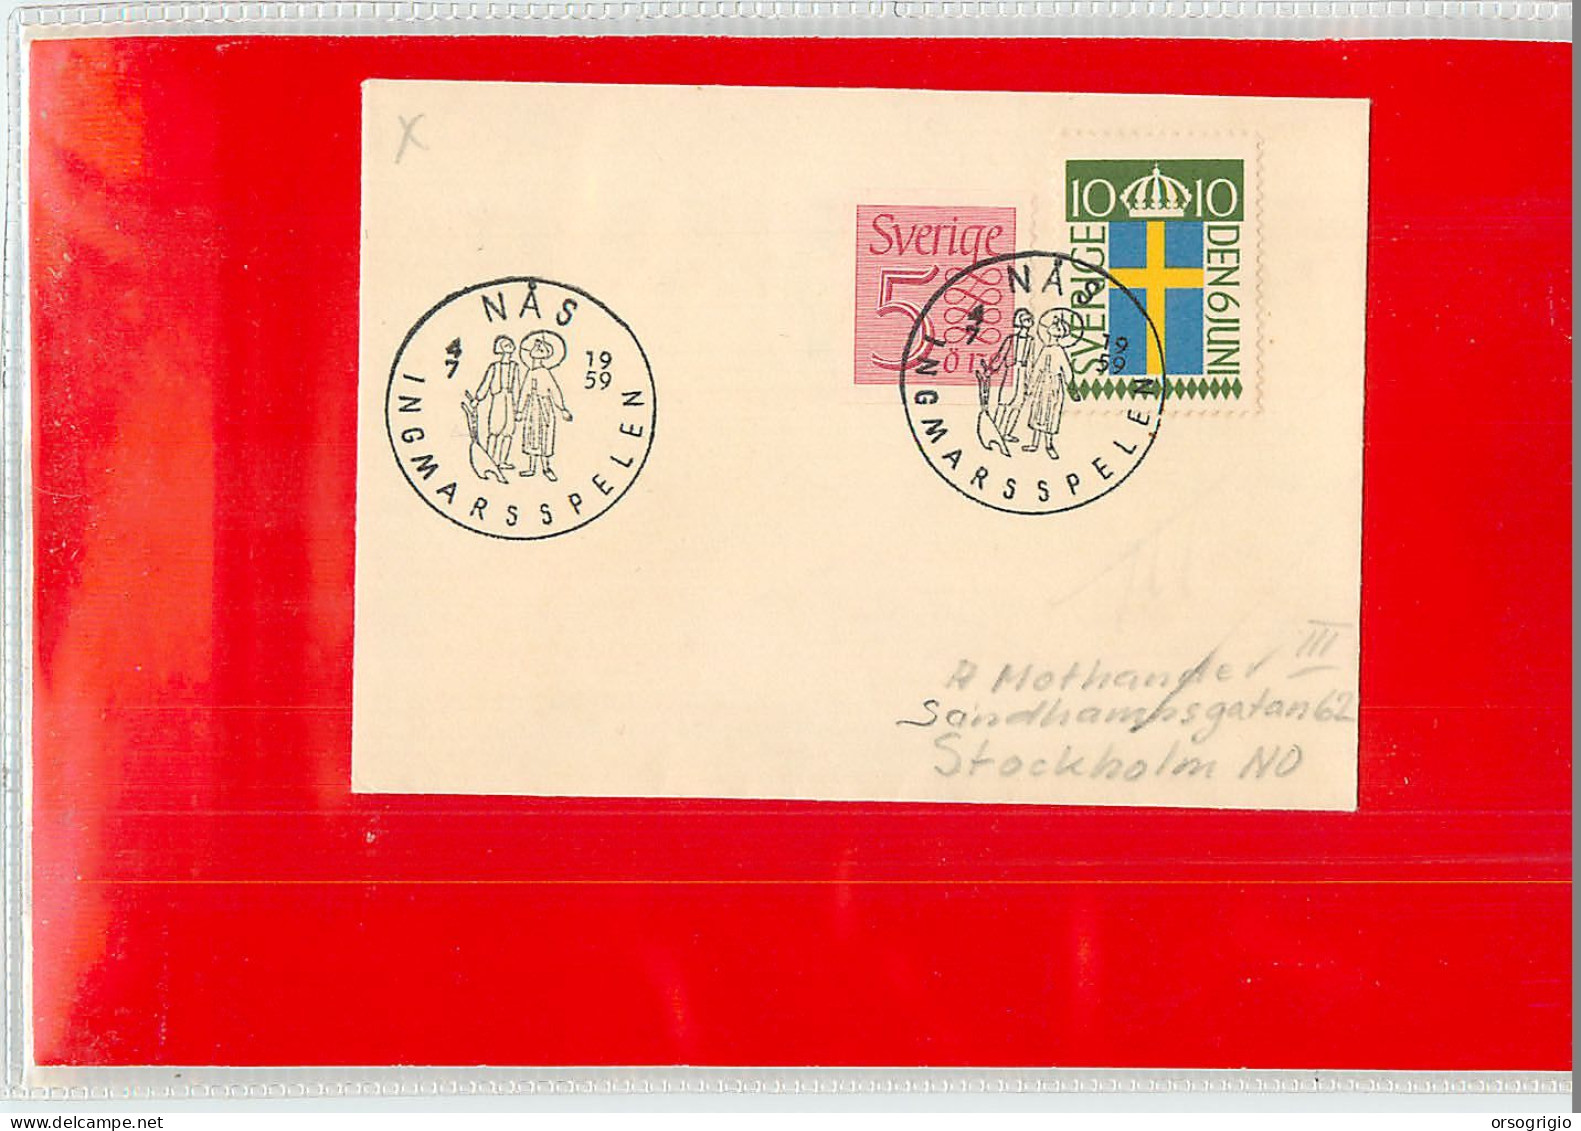 SVEZIA SVERIGE - NAS - INGMARSSPELEN 1959 - Covers & Documents